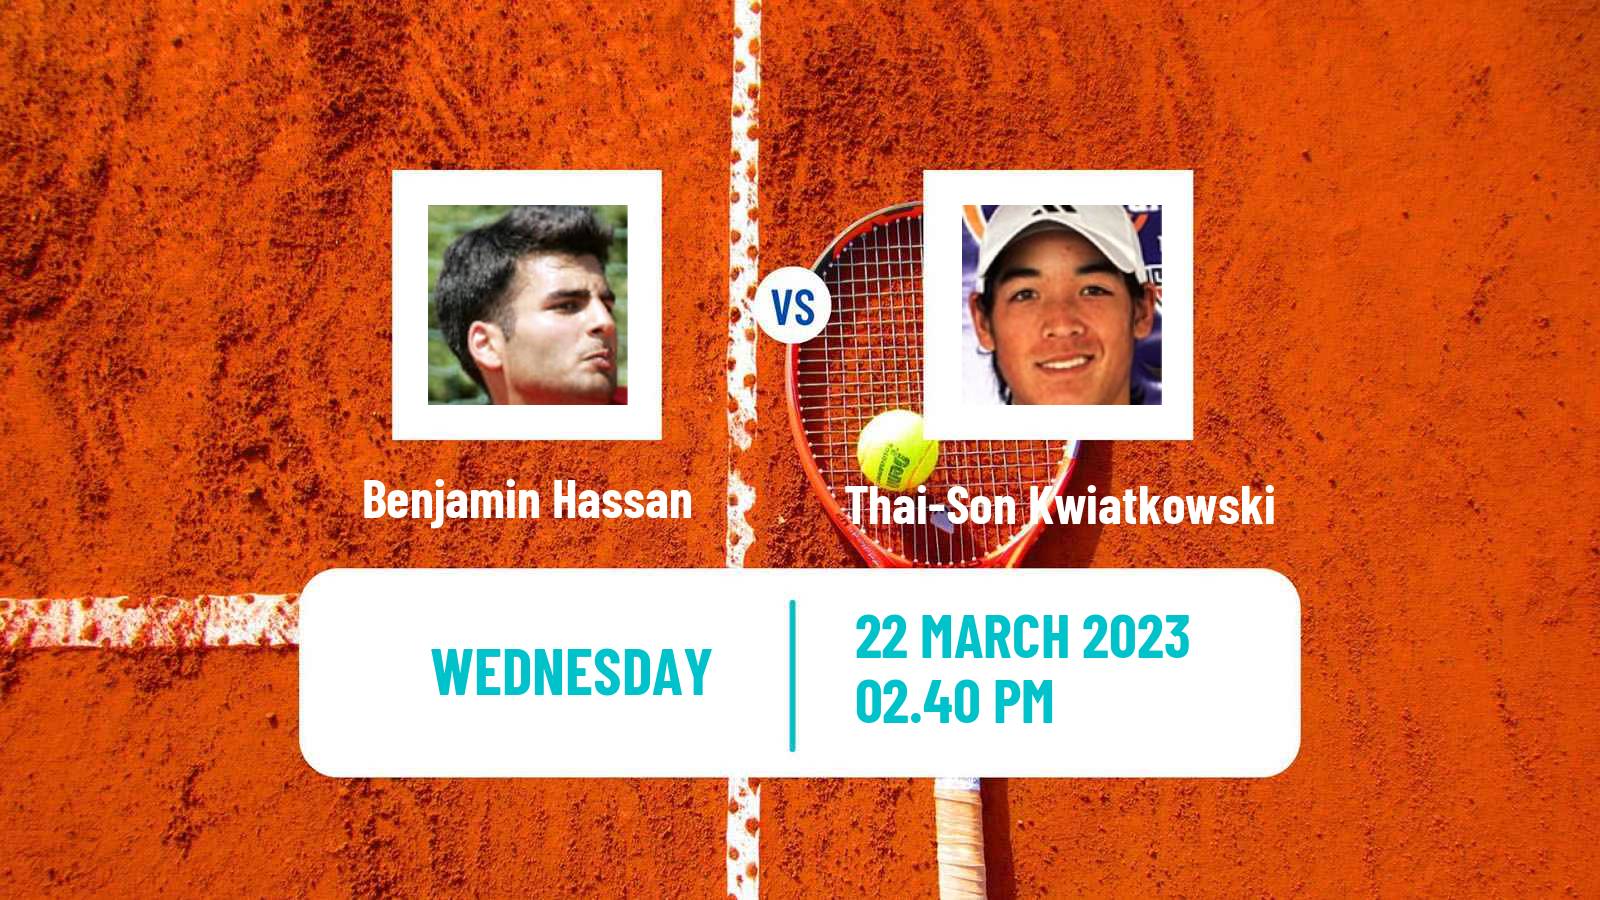 Tennis ATP Challenger Benjamin Hassan - Thai-Son Kwiatkowski